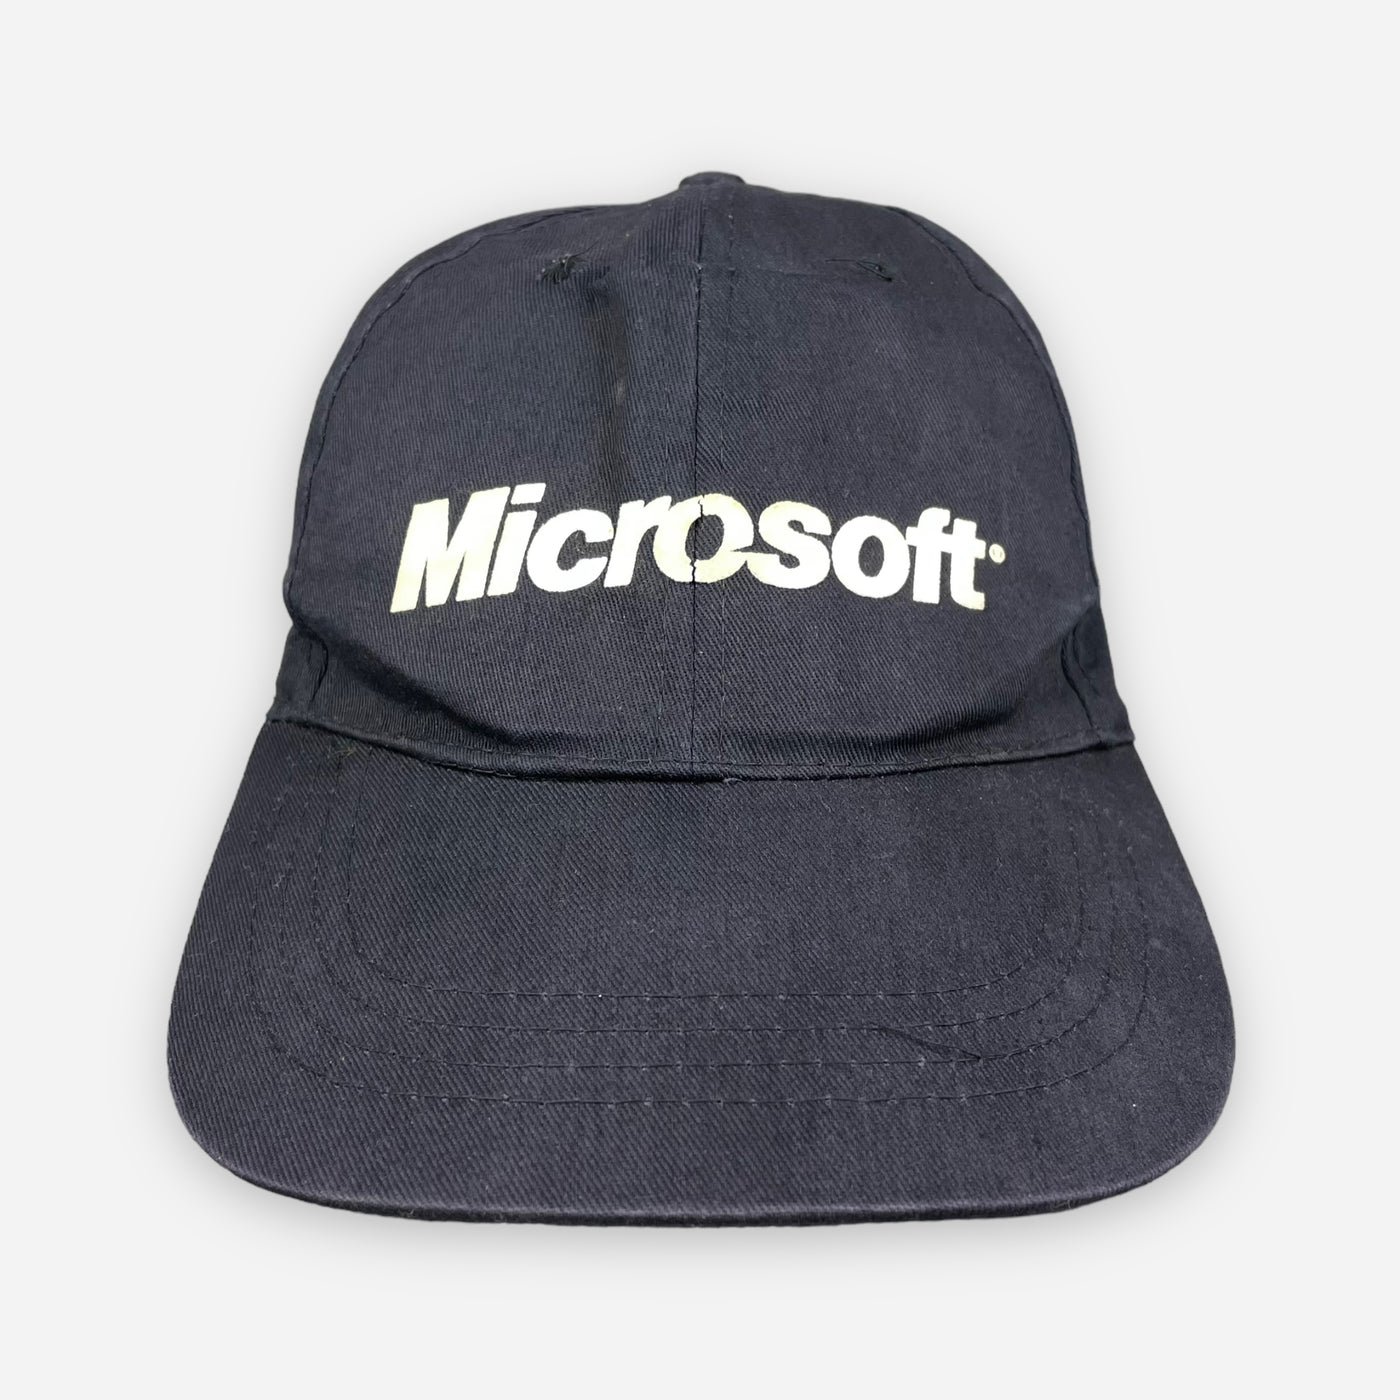 LATE 90S MICROSOFT CAP